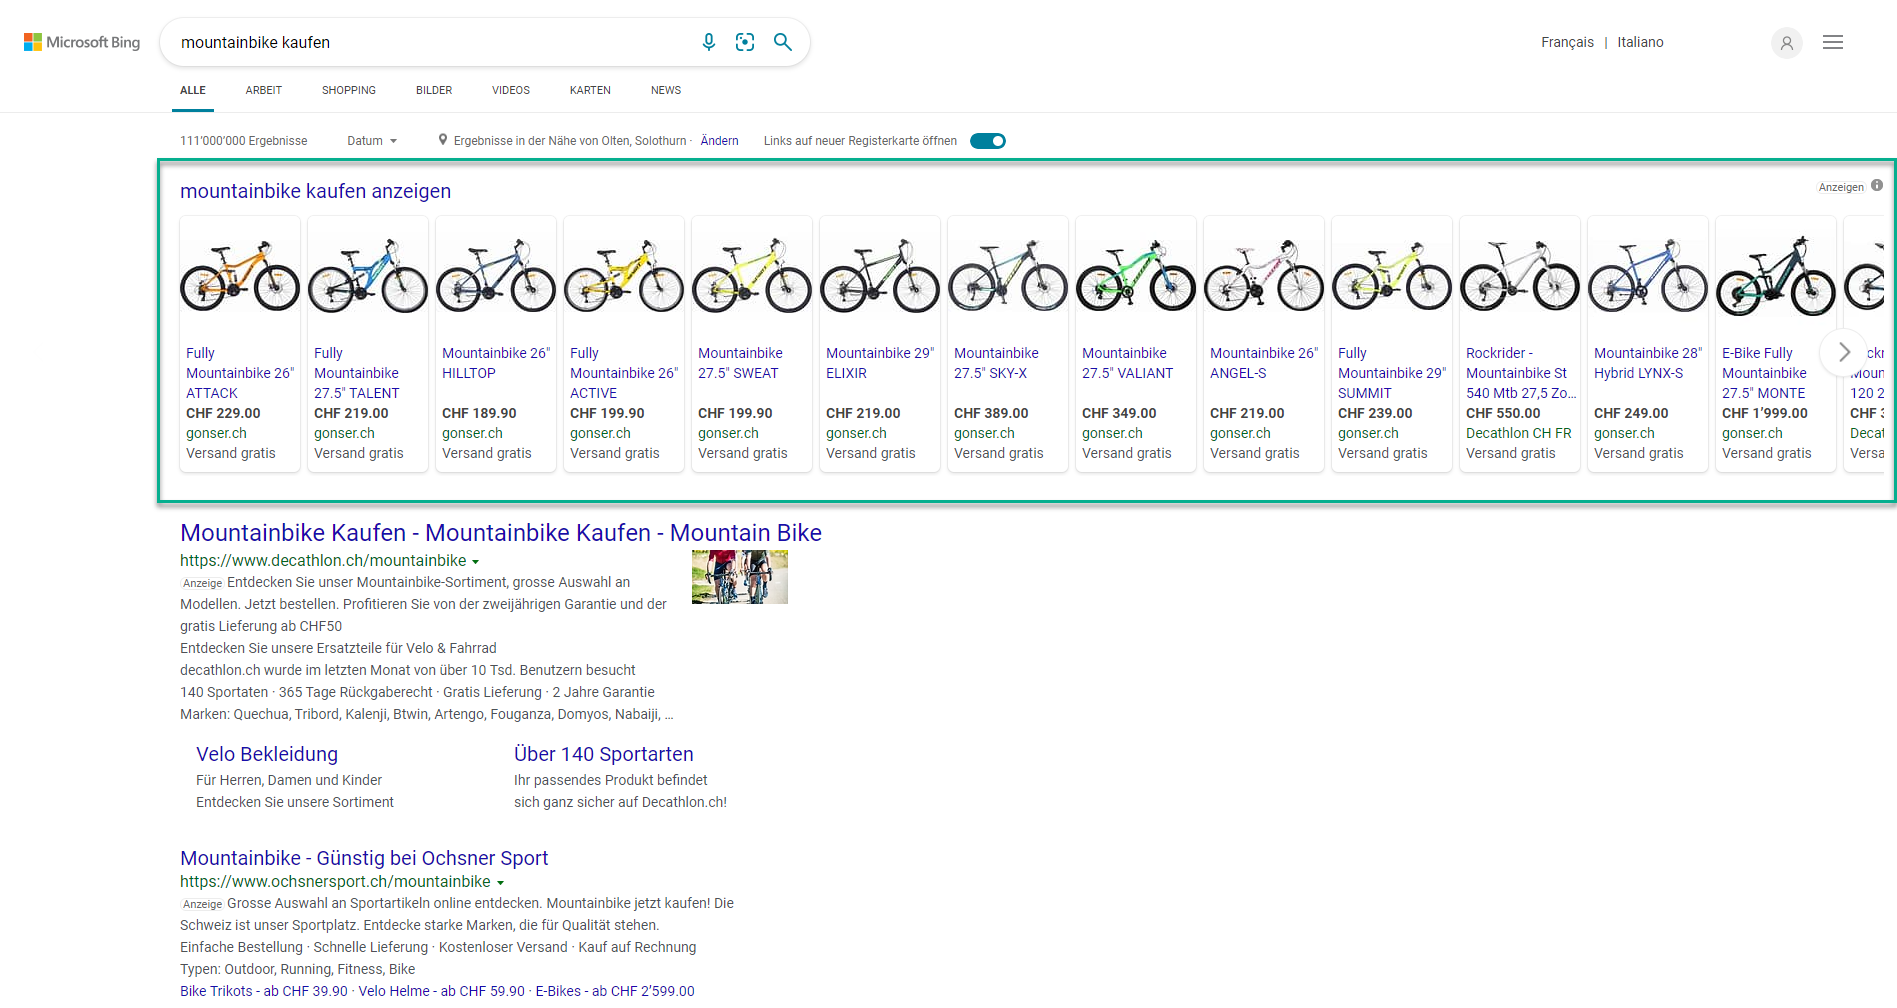 Suchanfrage Mountainbike kaufen bei Suchmaschine Bing